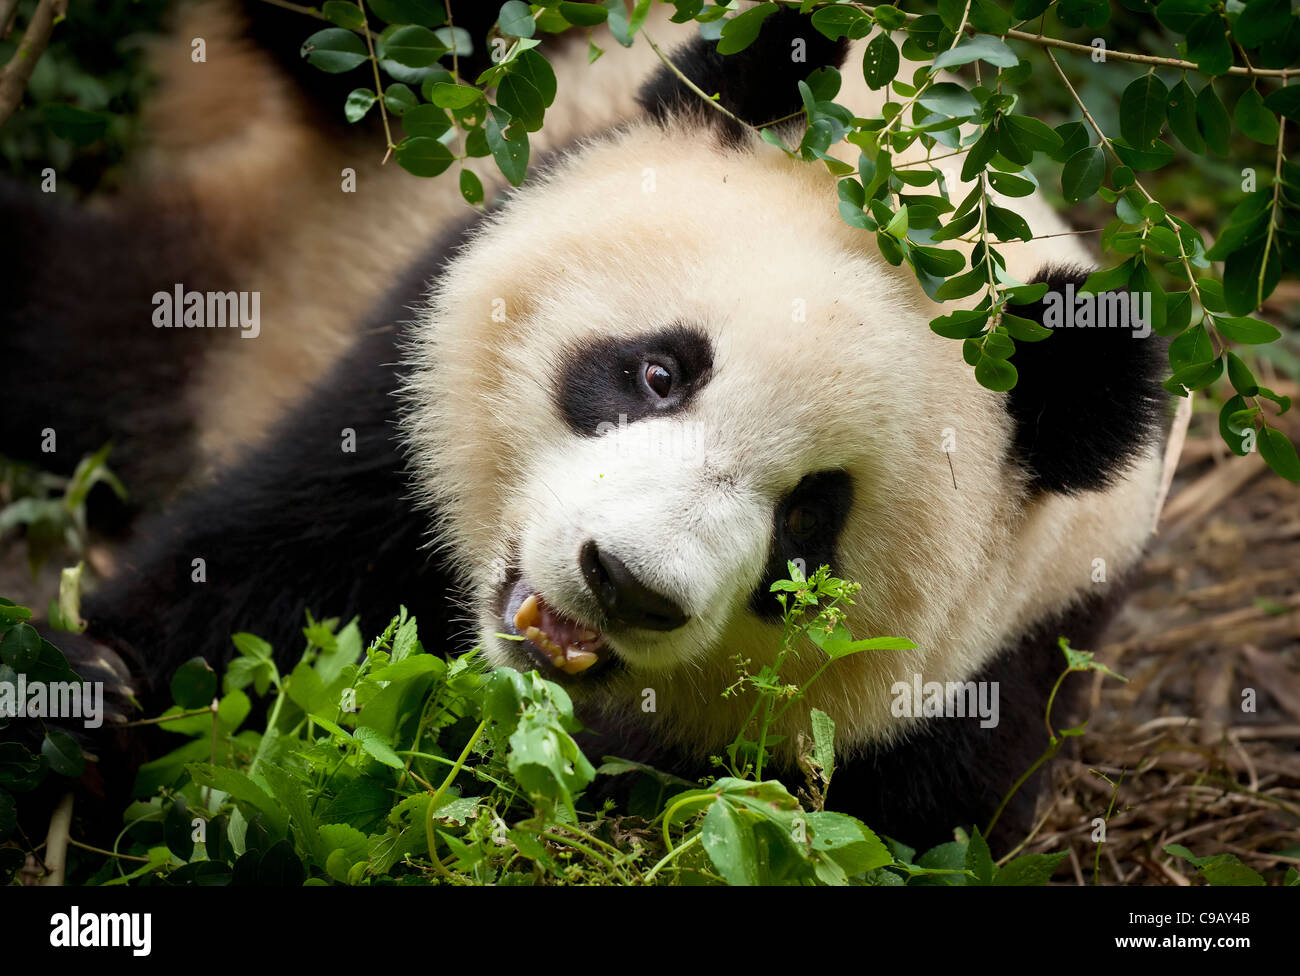 Le Panda Géant, Ailuropoda melanoleuca Panda et centre de recherche de reproduction, Chengdu, Chine République populaire de Chine, l'Asie Banque D'Images